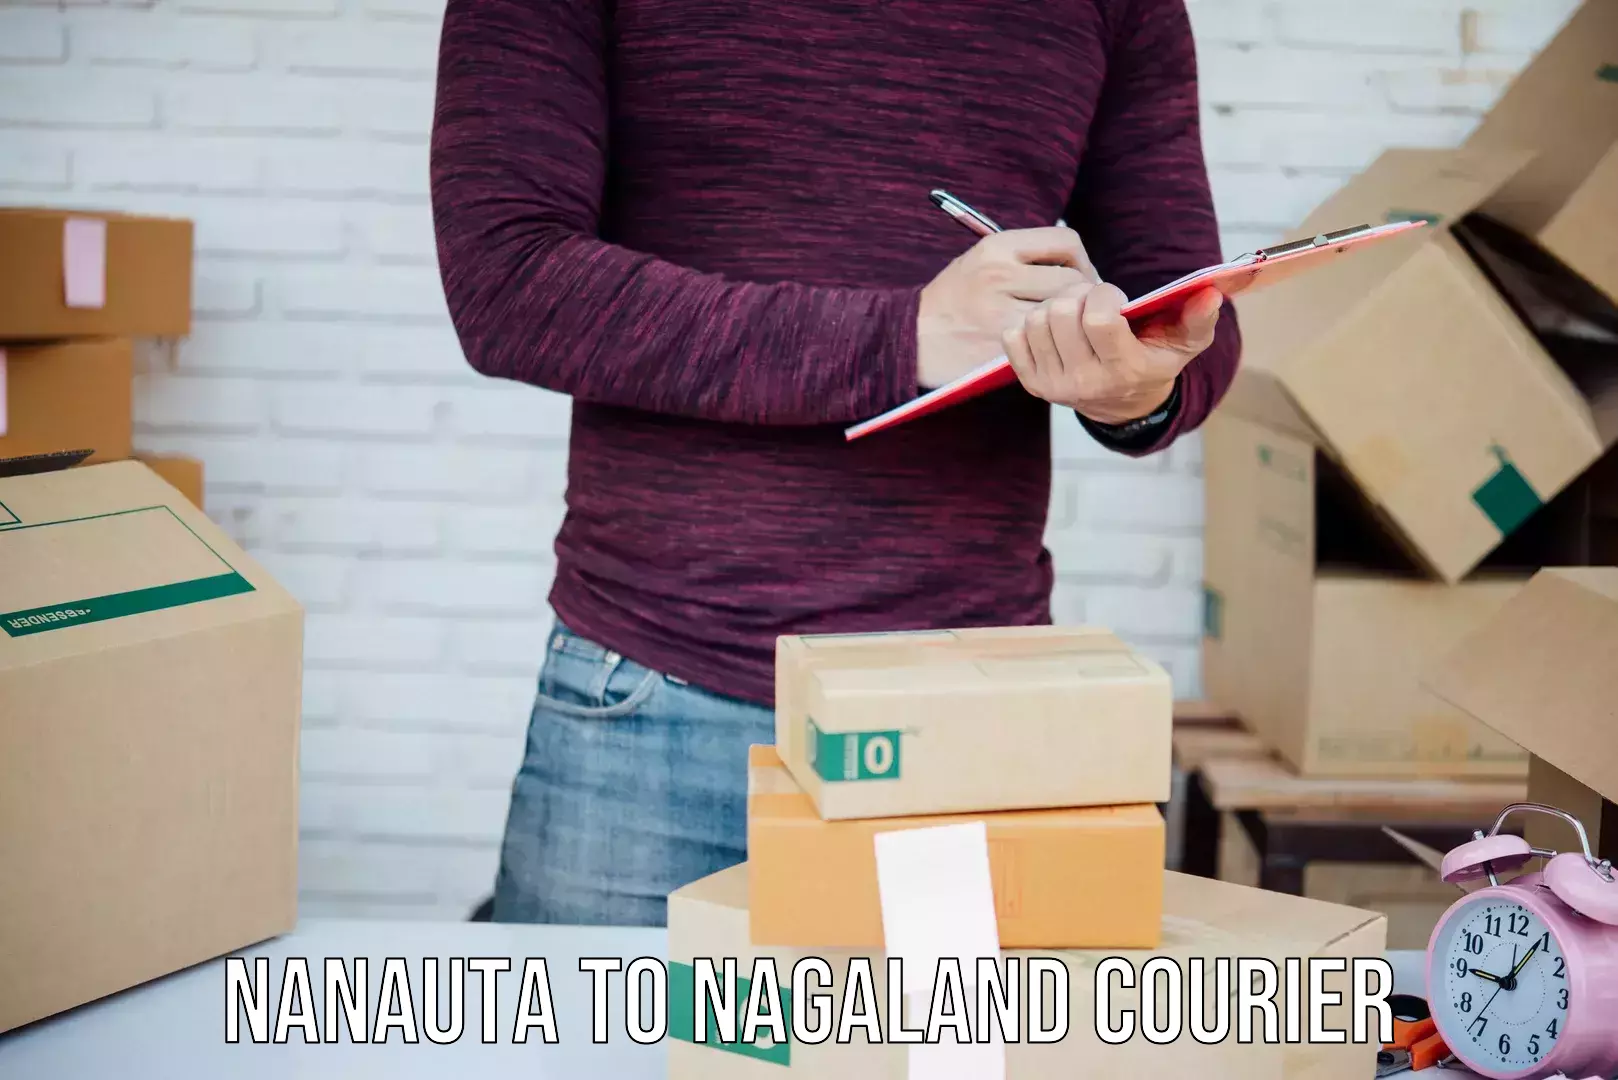 Efficient package consolidation Nanauta to NIT Nagaland